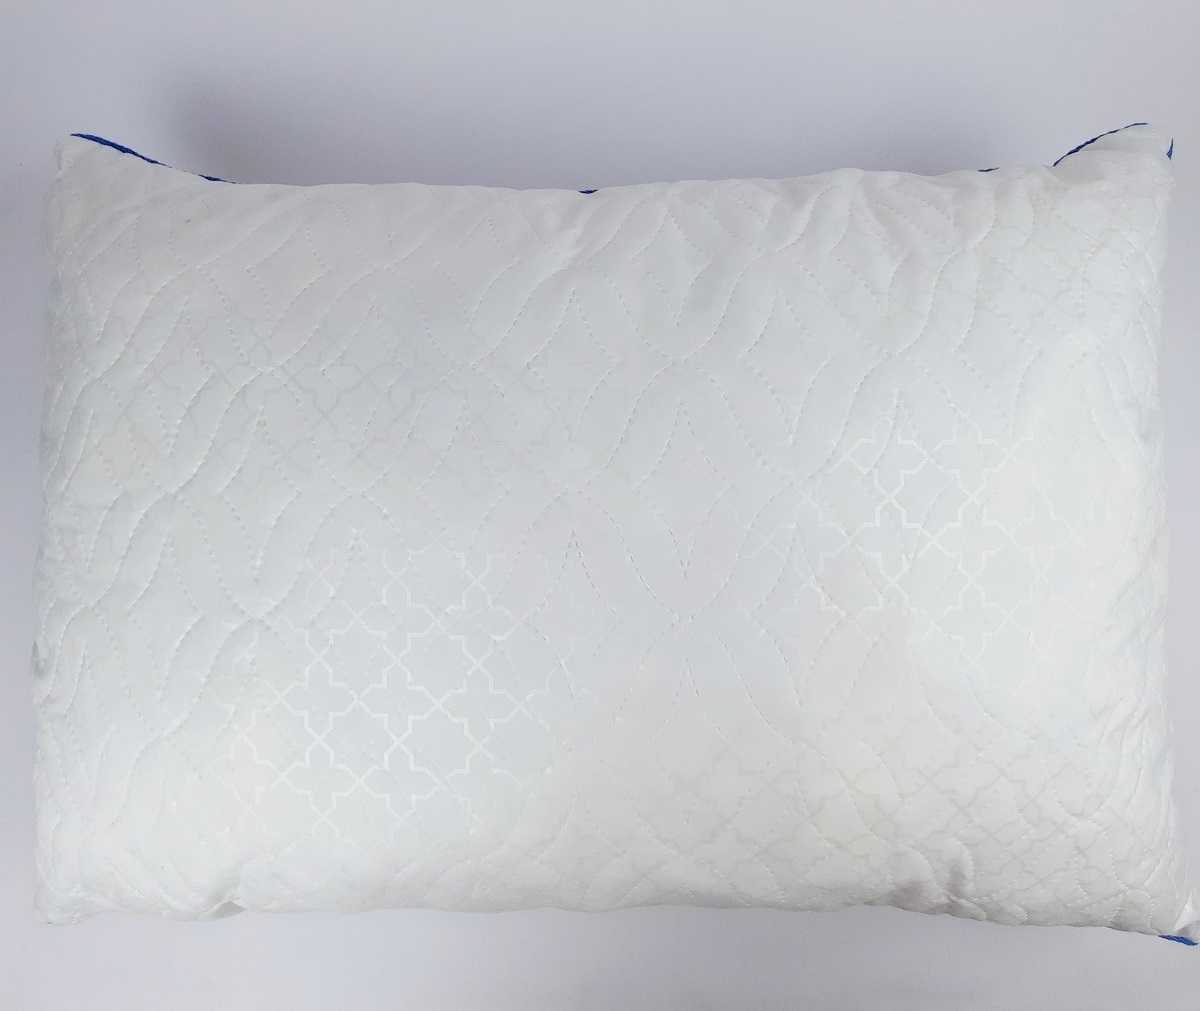 Наполнитель для подушек - какие лучше покупать и выбрать для сна, отзывы про комфорель, полиэфирное волокно что это такое, плюсы и минусы